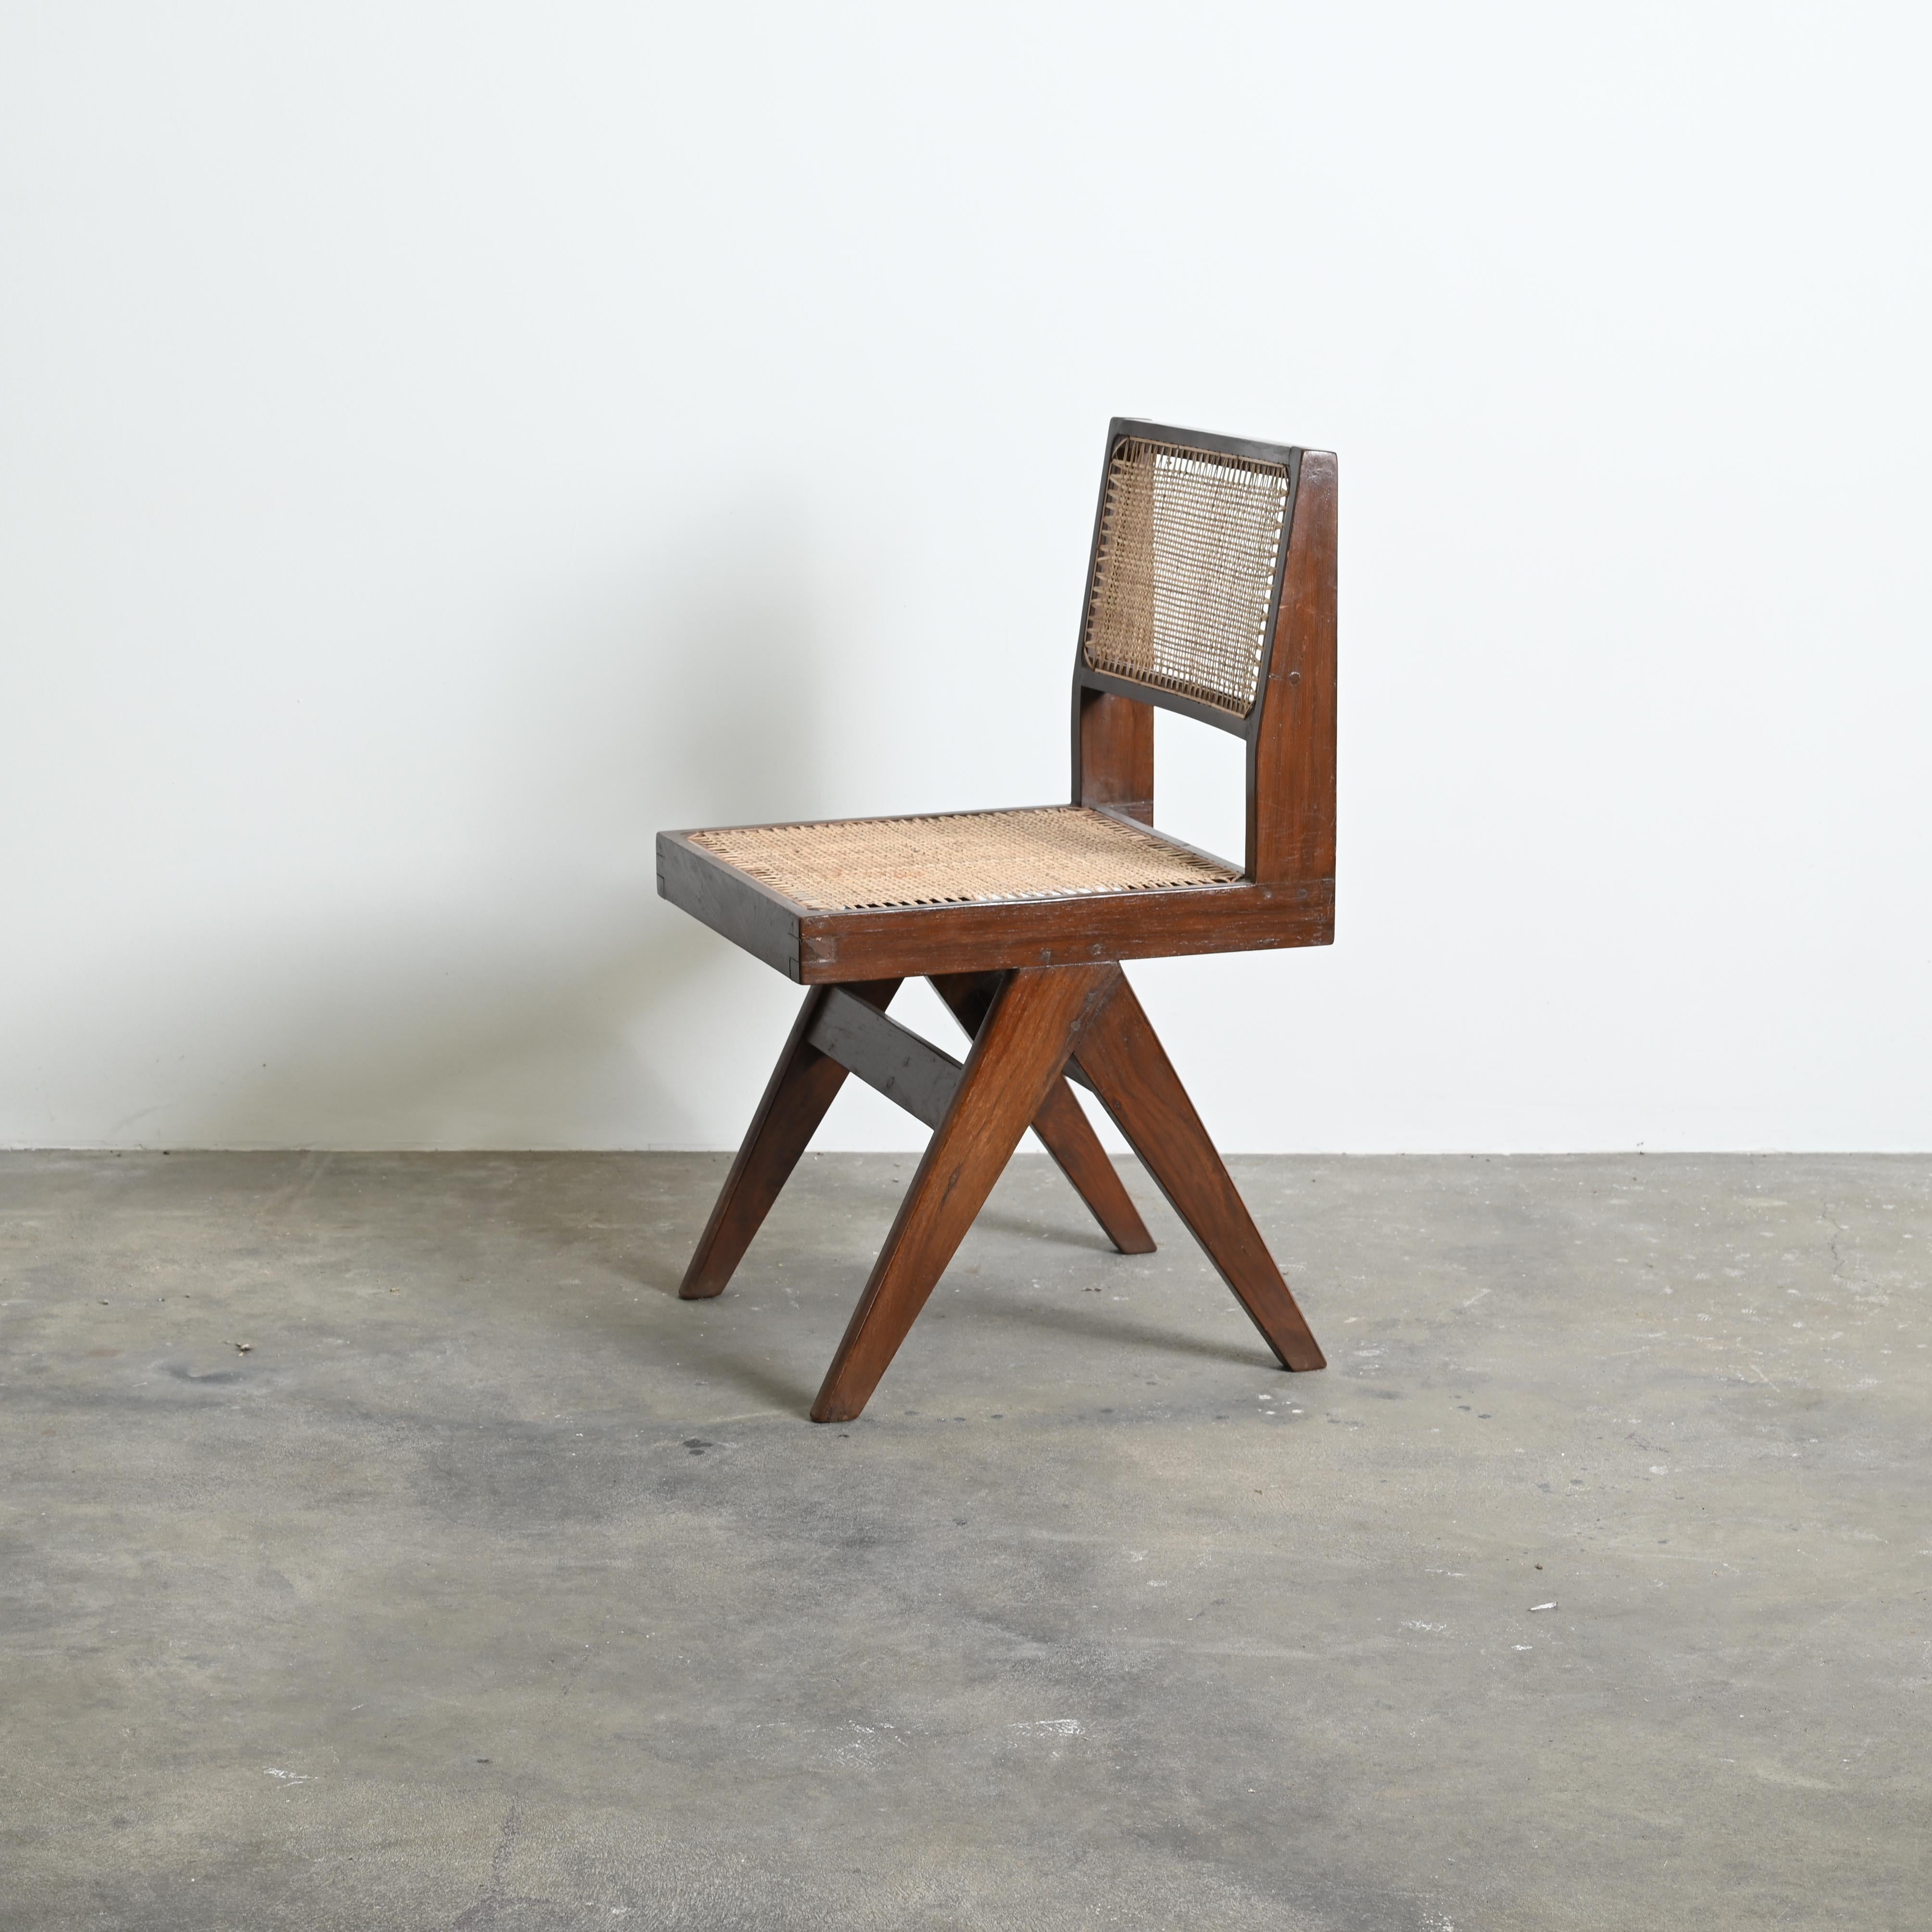 Dieses Stuhlpaar ist eine Ikone unter den Stühlen. Es wirkt so einfach und doch so präzise, wo die Proportionen perfekt zu sein scheinen. Diese A-förmigen Beine sind typisch für Chandigarh-Objekte. Dann dieser L-förmige Sitz, bei dem die Balken an